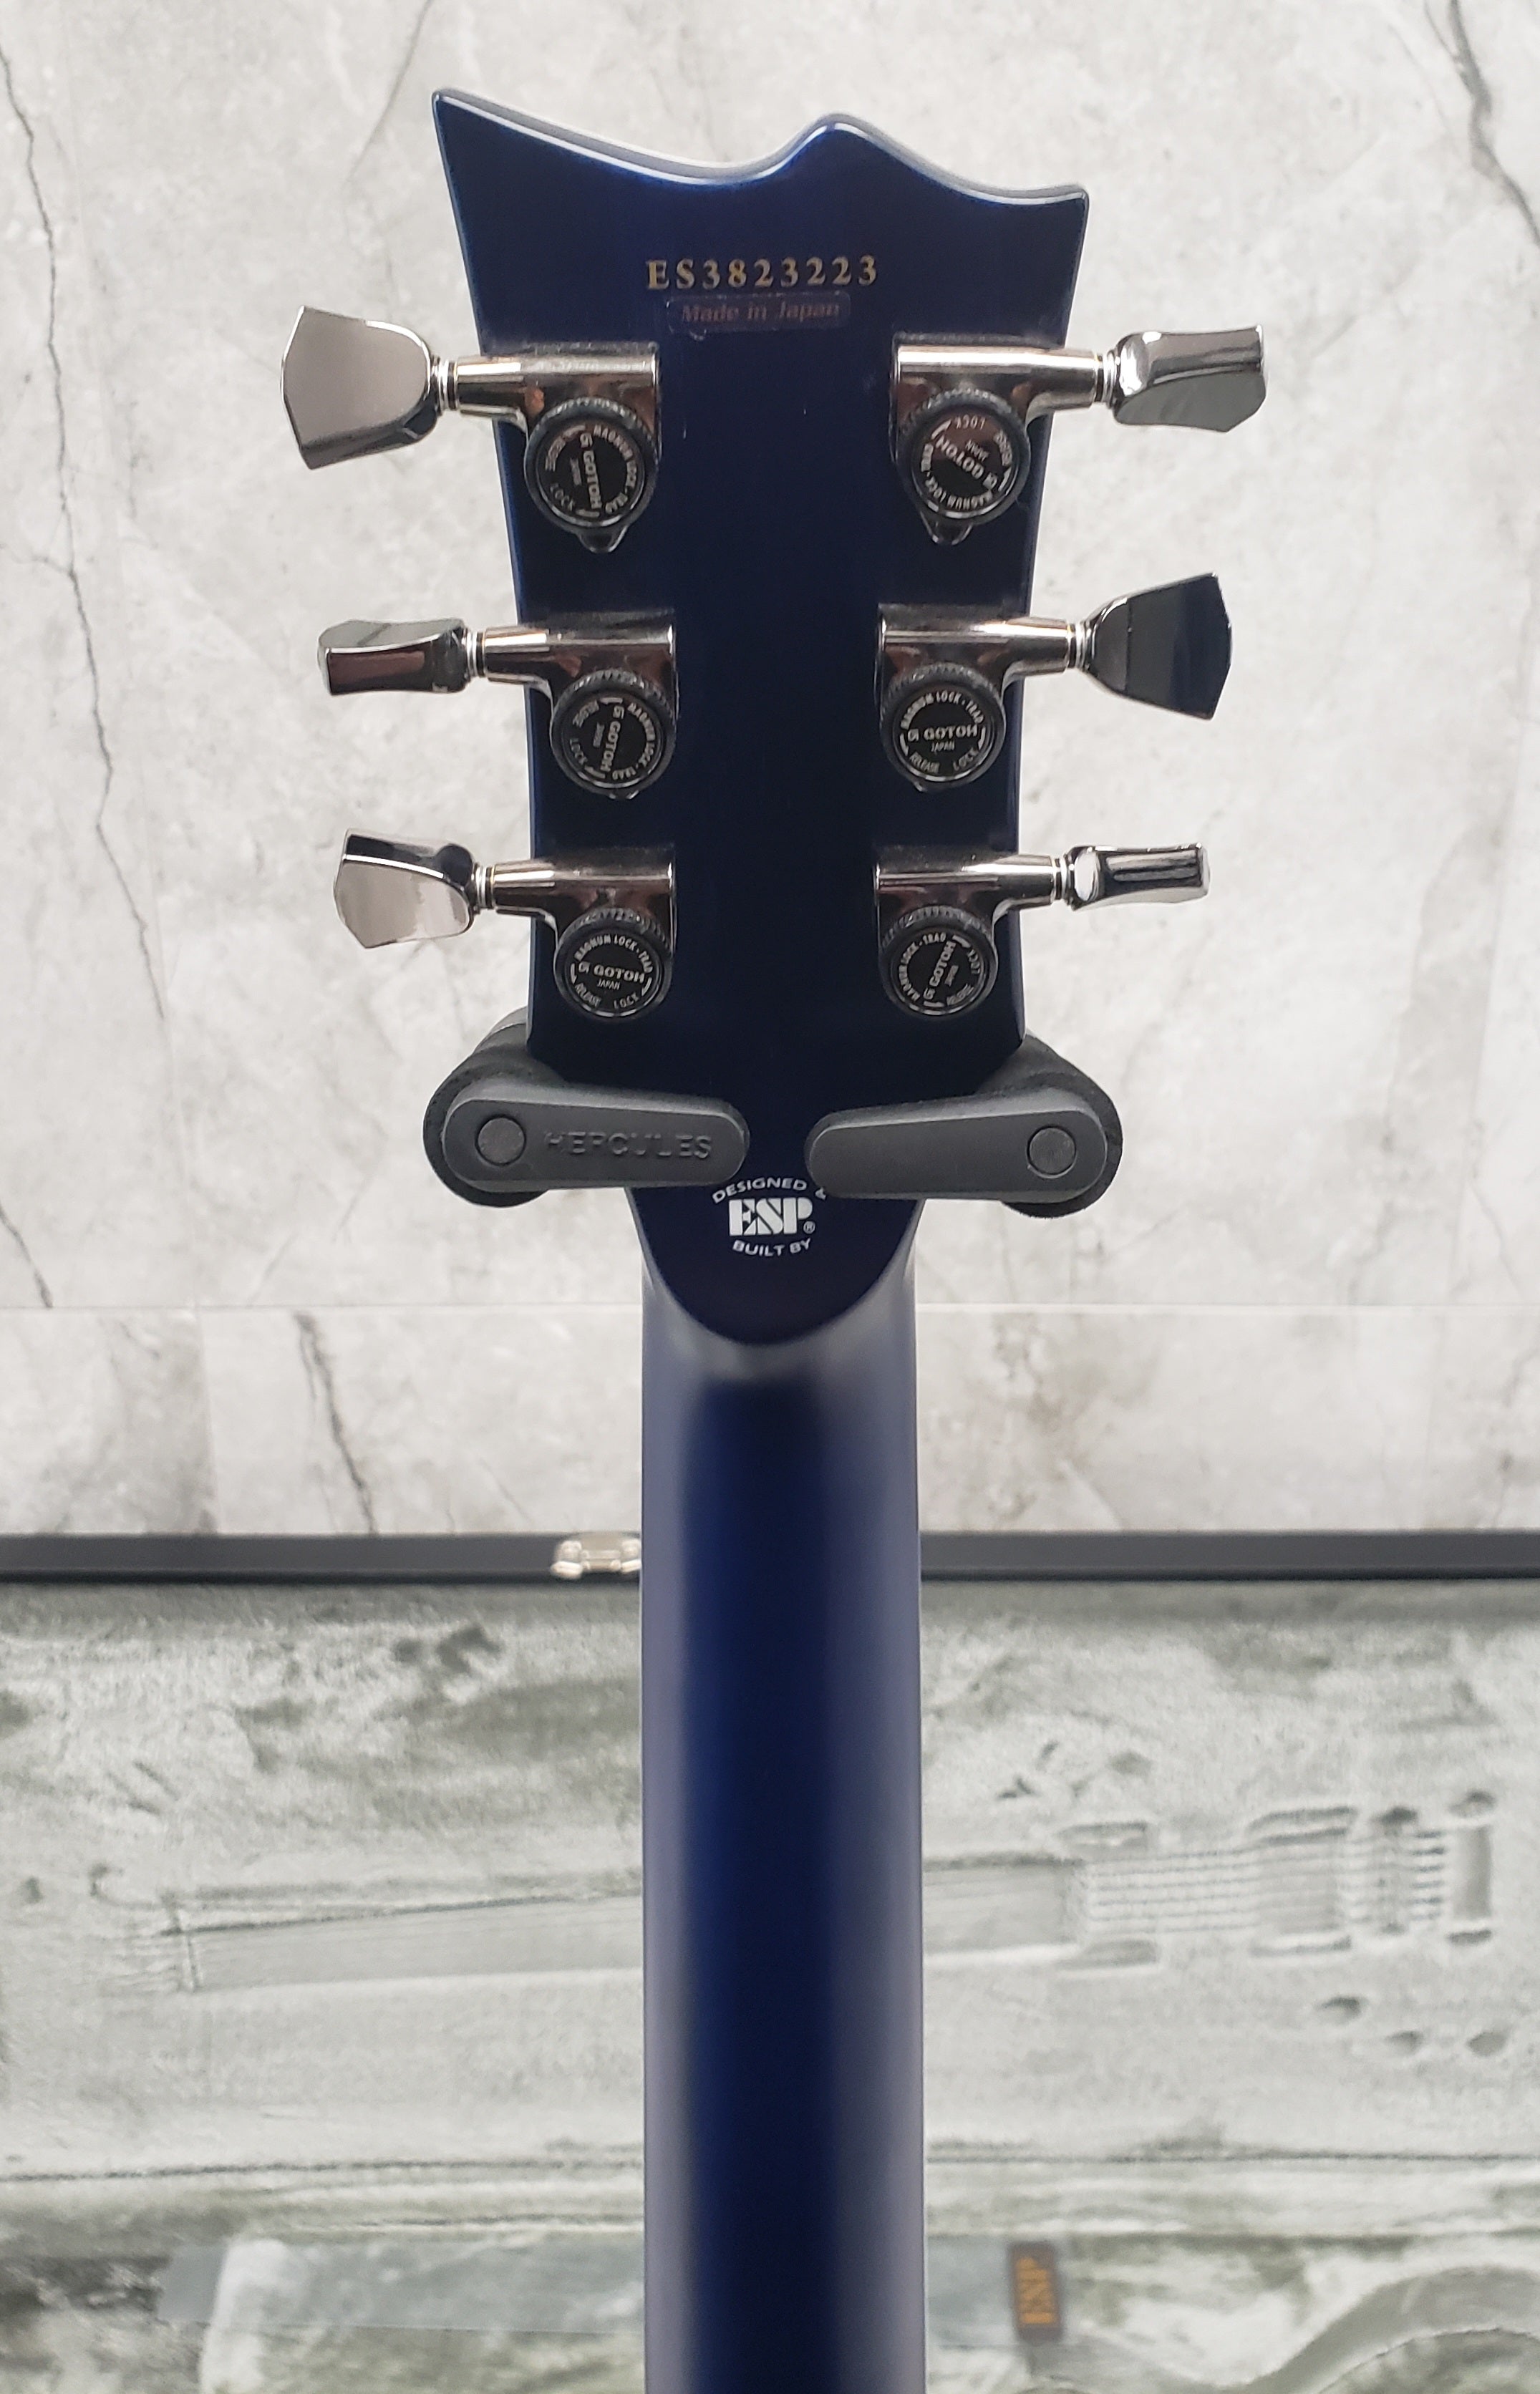 ESP E-II Eclipse Guitar MADE IN JAPAN Blue Natural Fade EIIECBMBLUNFD